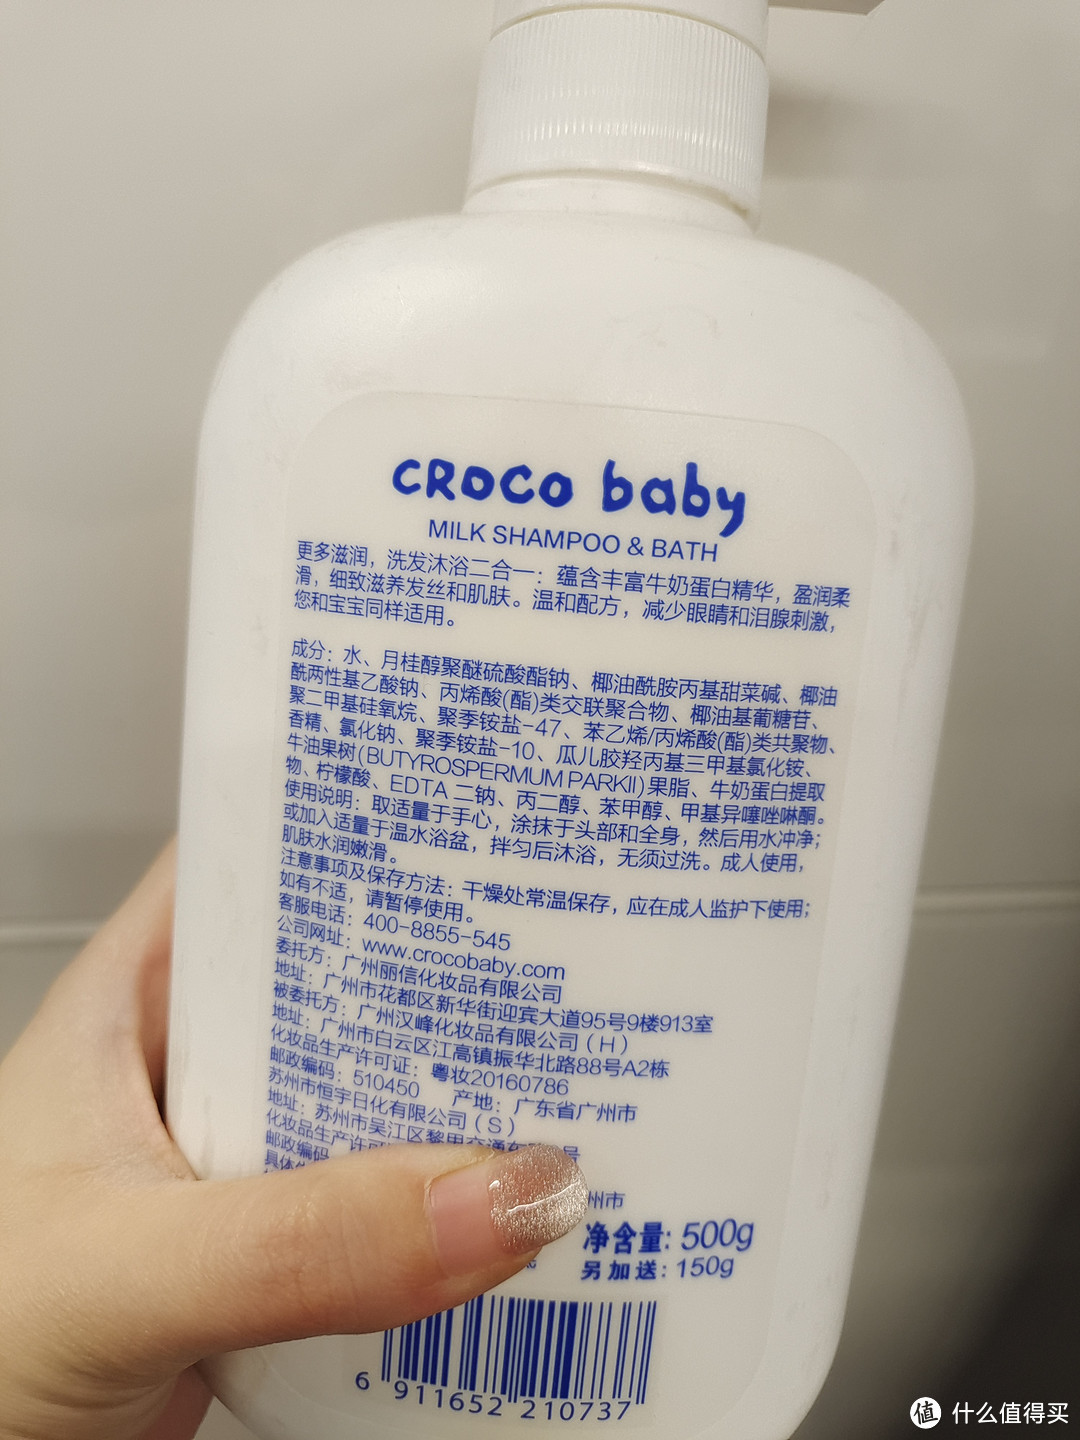 便捷高效的鳄鱼宝宝二合一洗发露沐浴露。